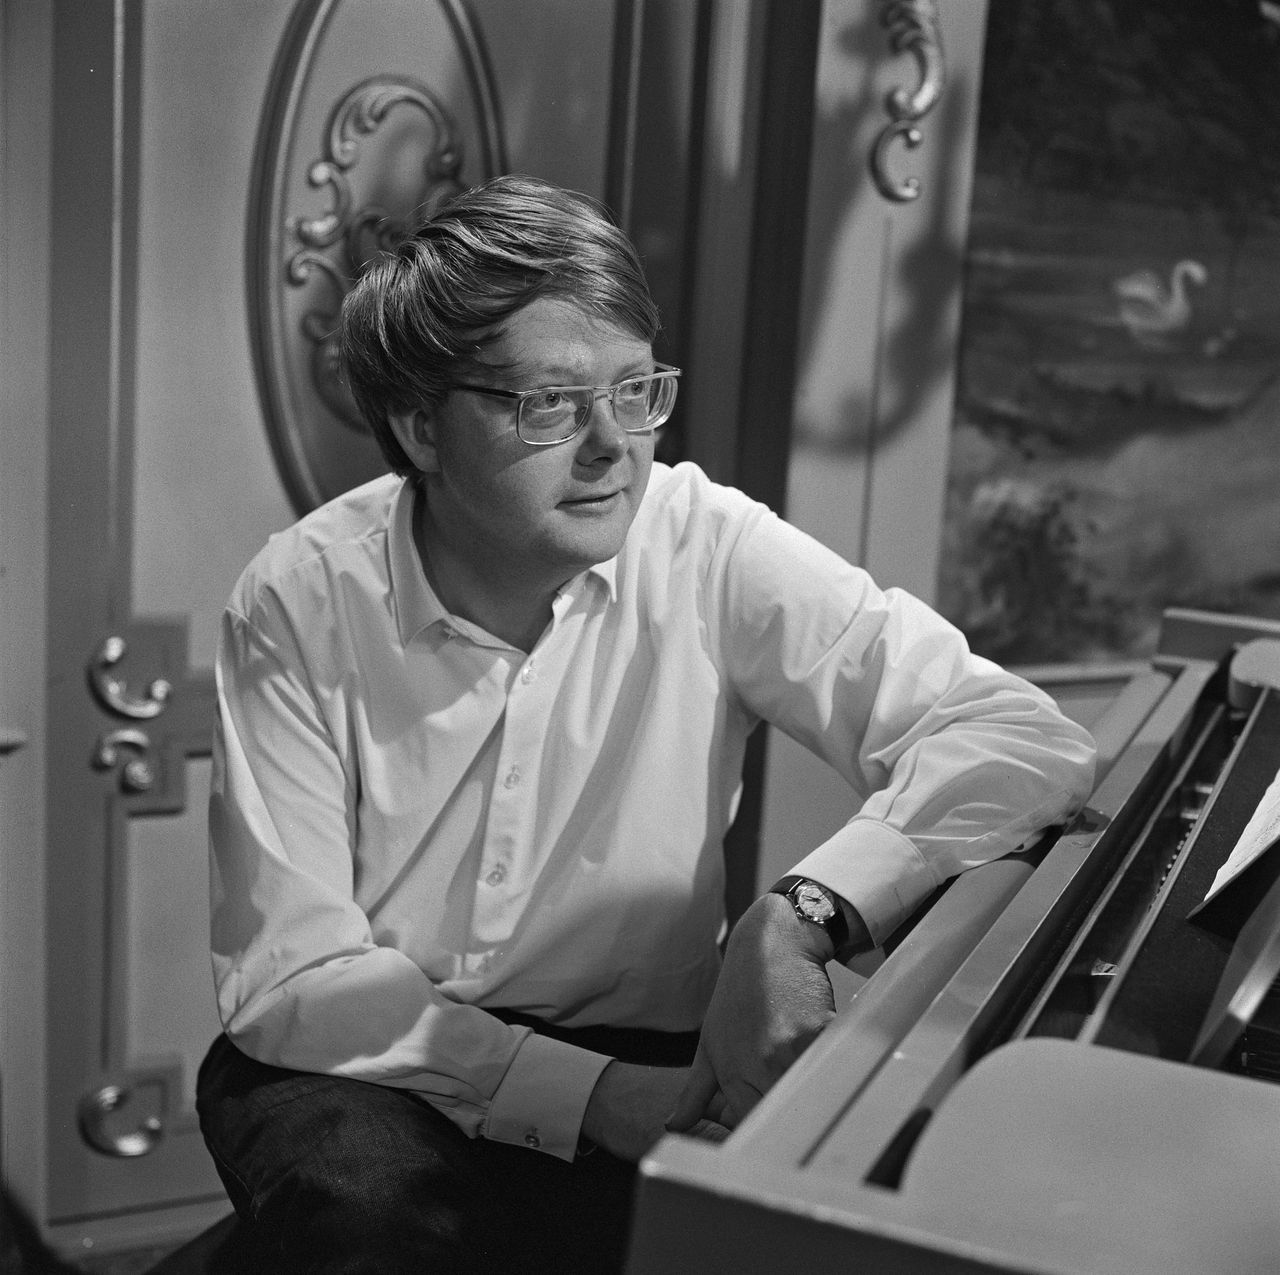 Componist Louis Andriessen in de jaren zestig.